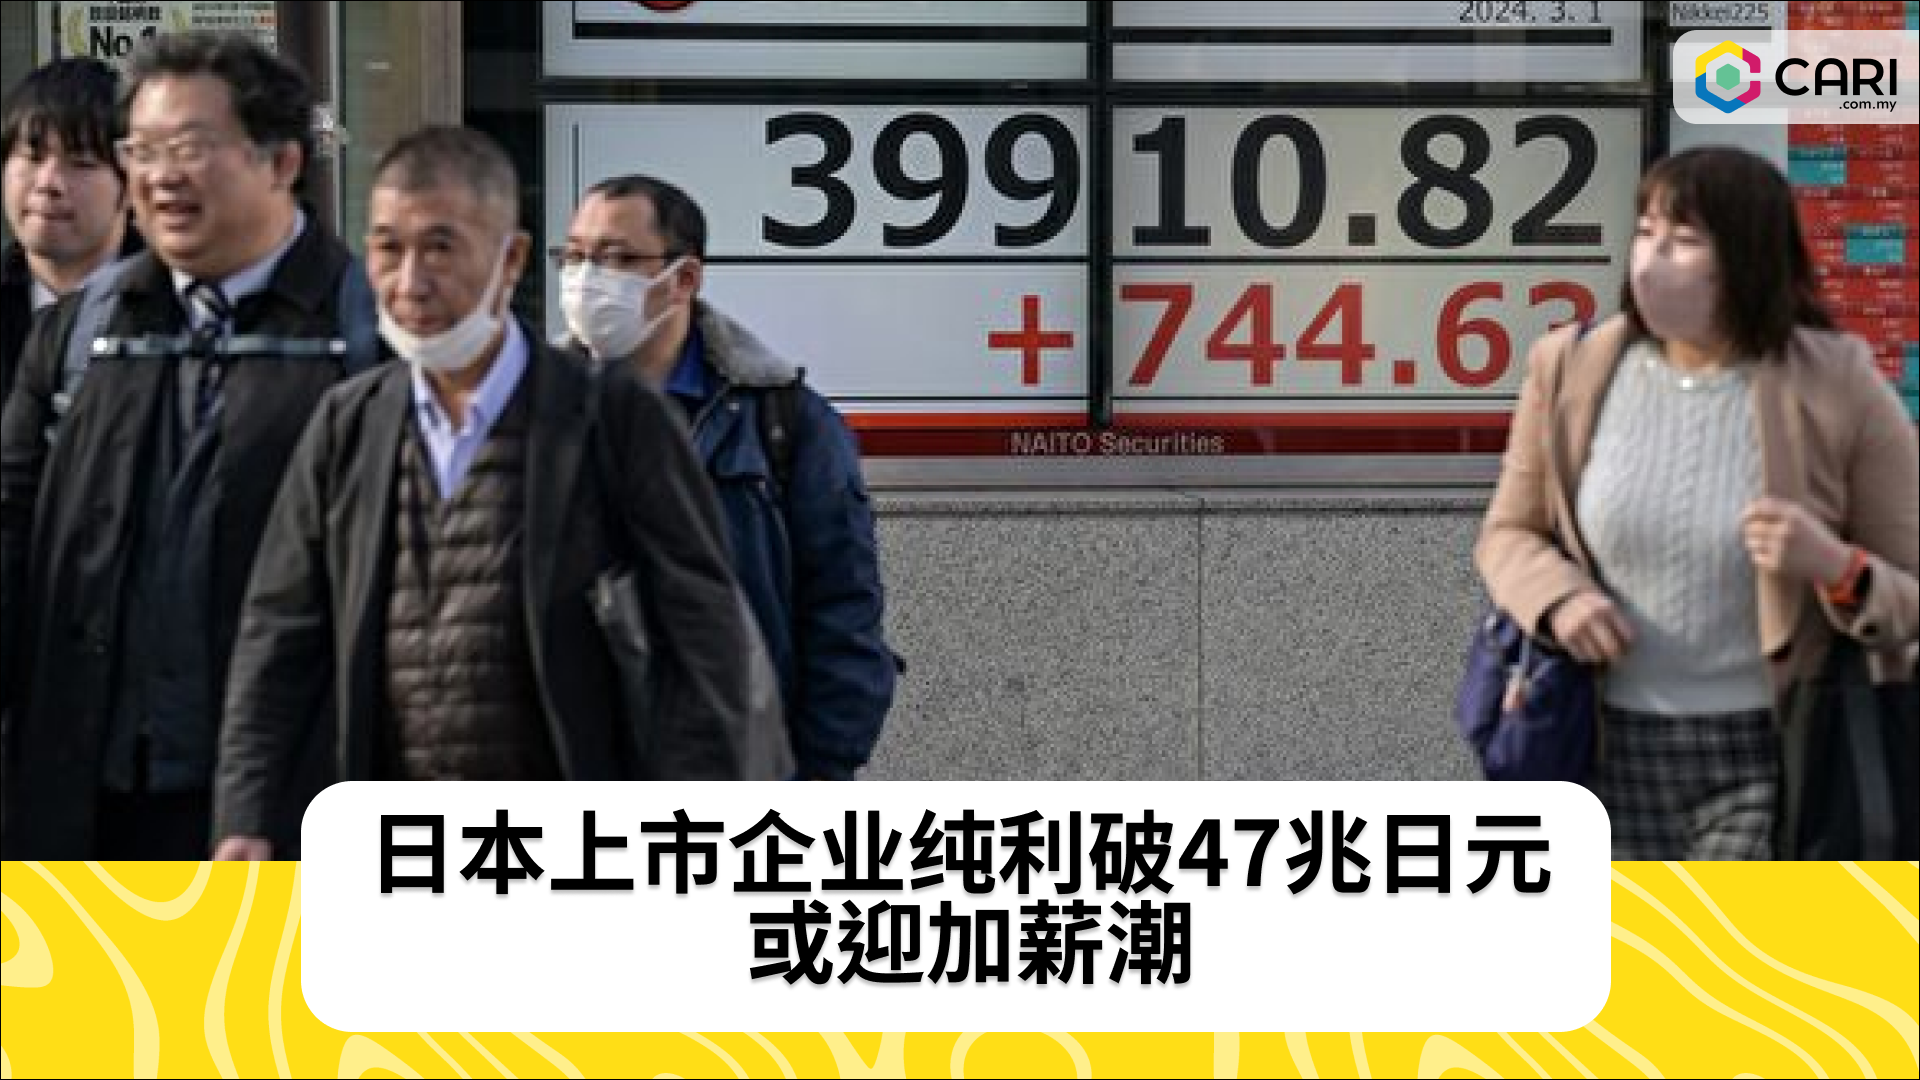 日本上市企业纯利破47兆日元 或迎加薪潮